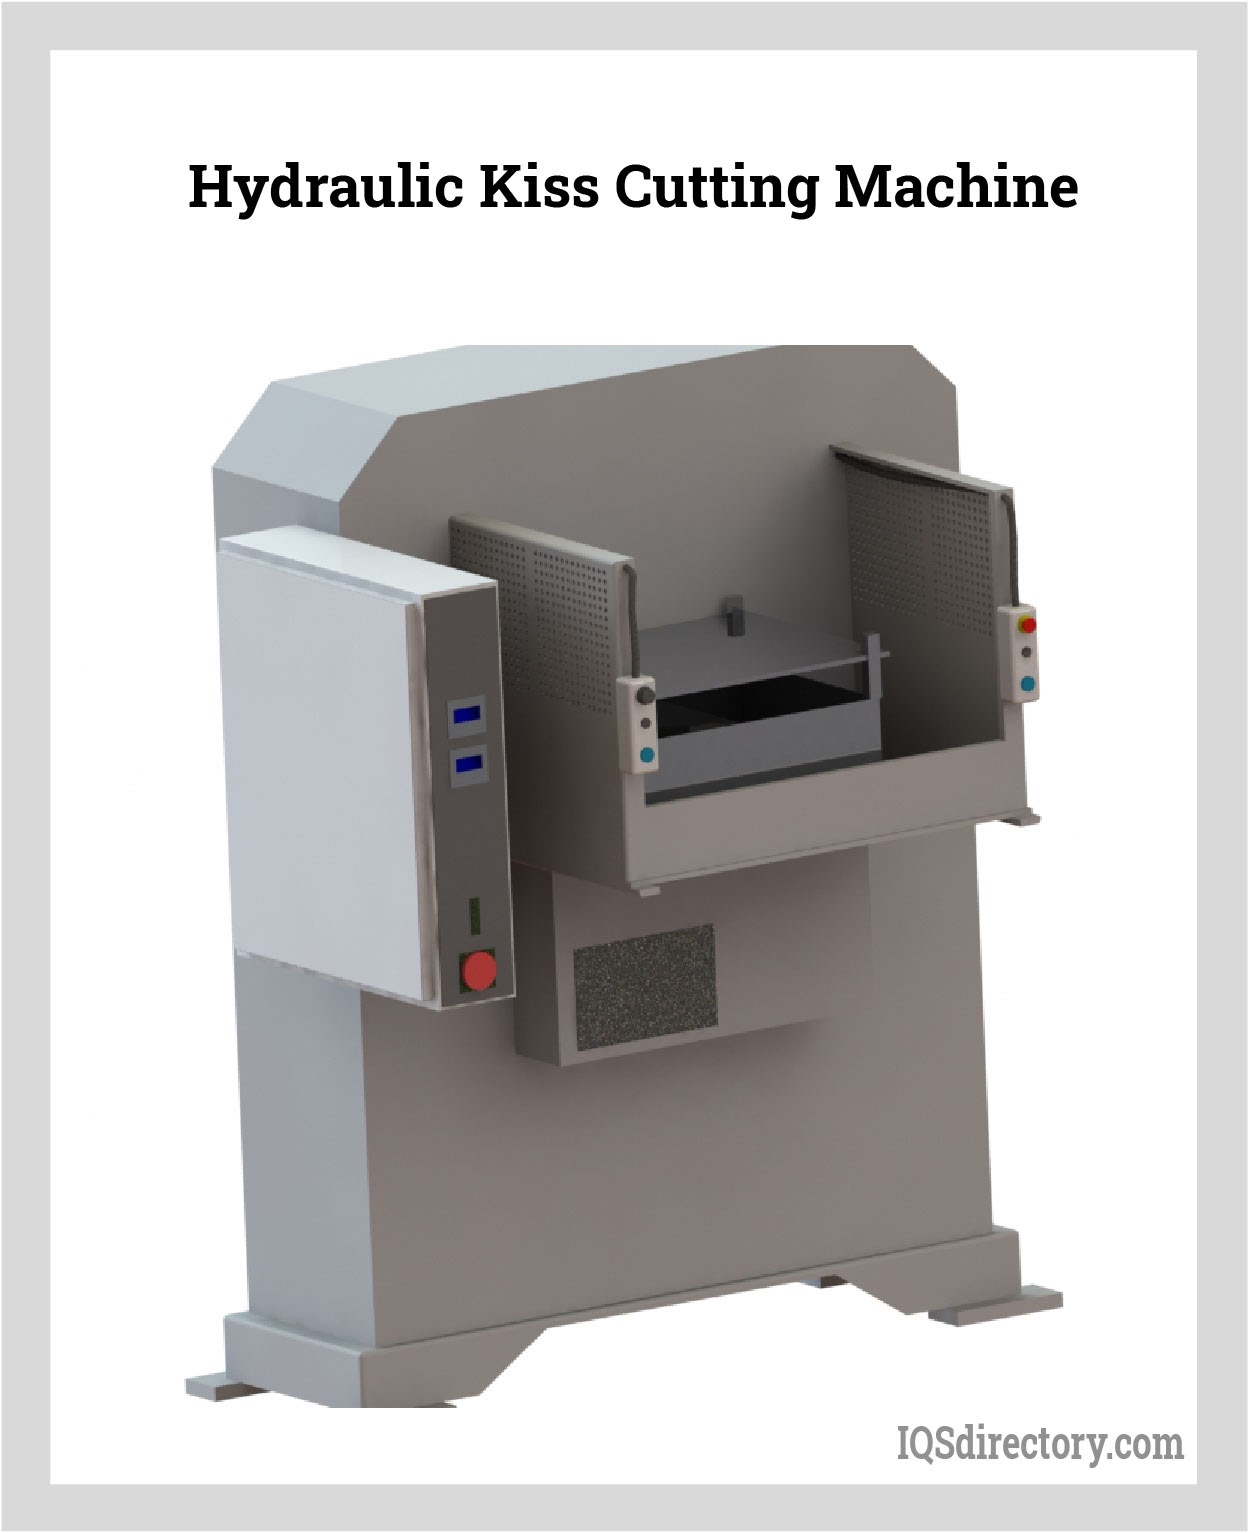 Hydraulic Kiss Cutting Machine